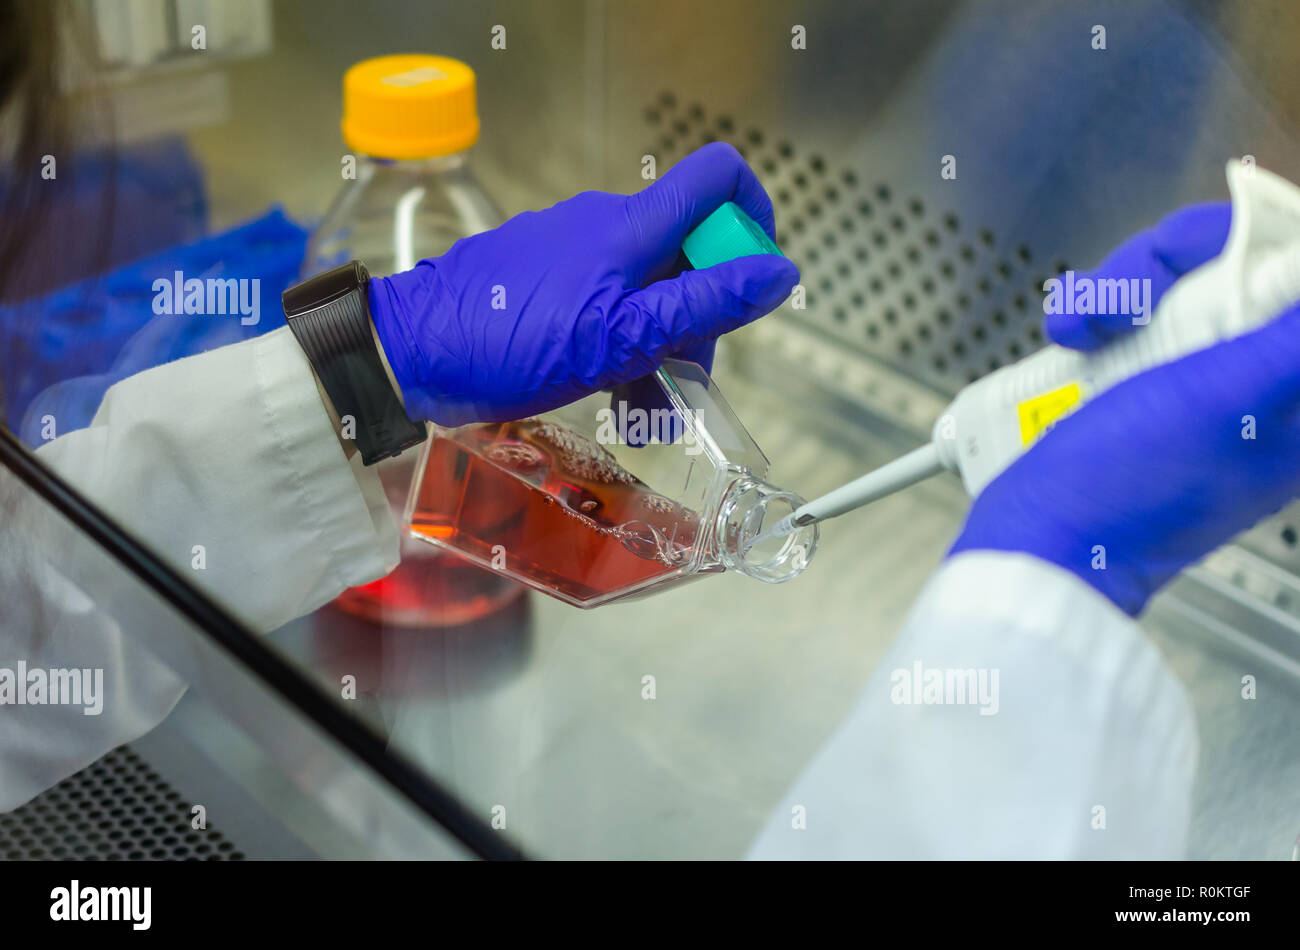 Lavorando con i mezzi di coltura cellulare nel contenitore di biosicurezza in una condizione di sterilizzare Foto Stock